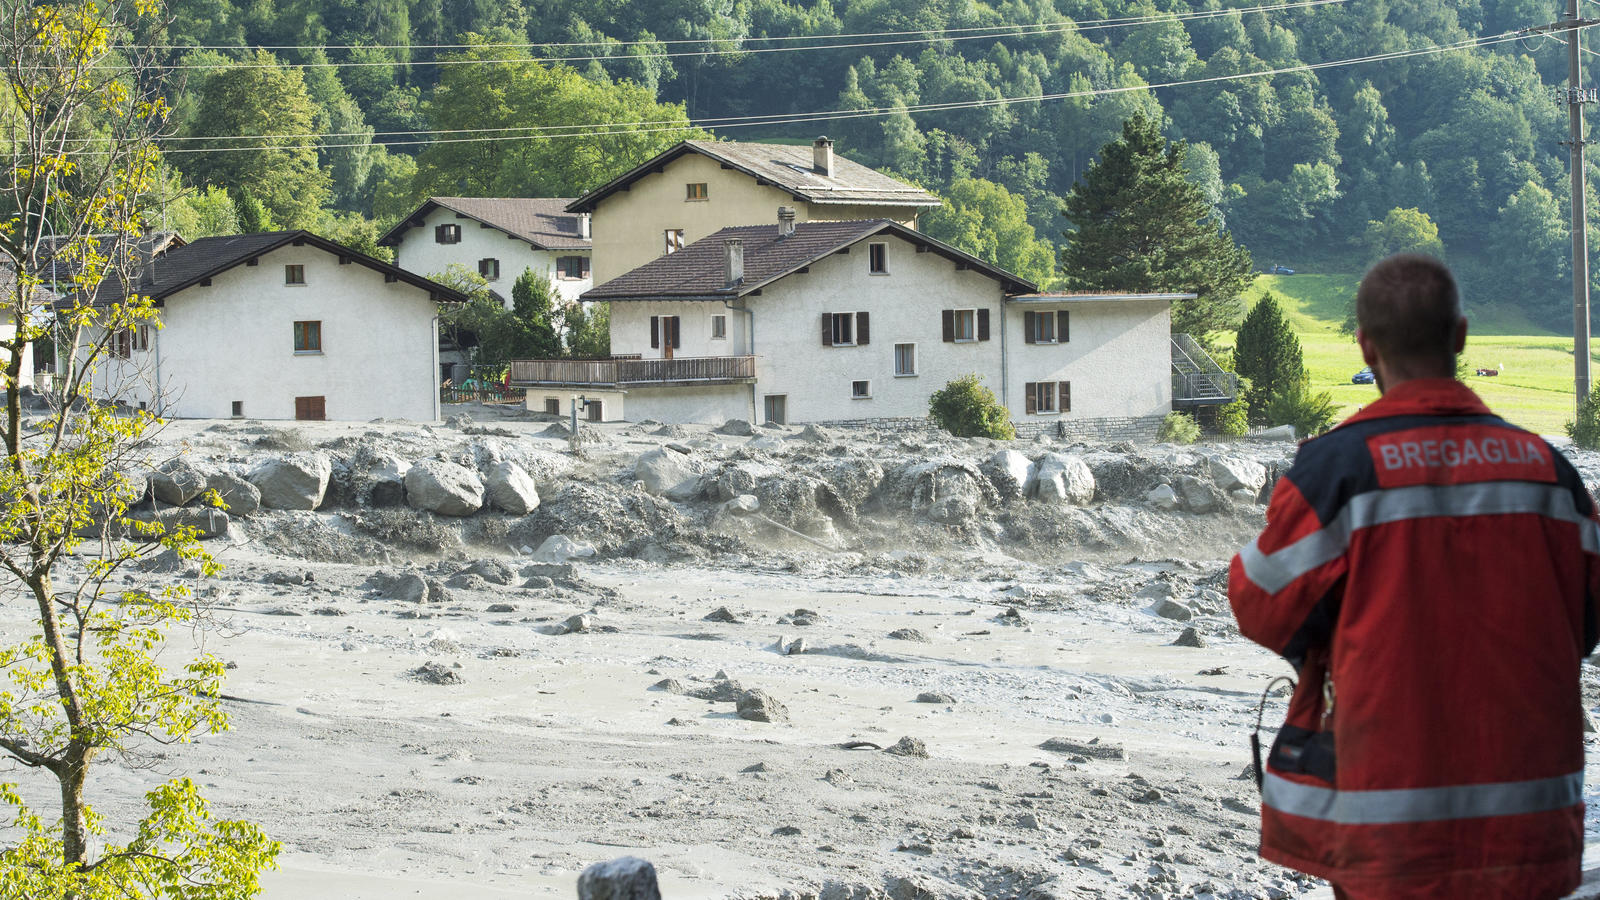 Schlamm und Gesteinsbrocken liegen am 23.08.2017 in Bondo im Kanton Graubünden (Schweiz). Am 3369 Meter hohen Piz Cengalo hinter Bondo hatten sich Gesteinsmassen gelöst und waren ins Tal gedonnert. Es werden acht Menschen vermisst, die Einwohner des 